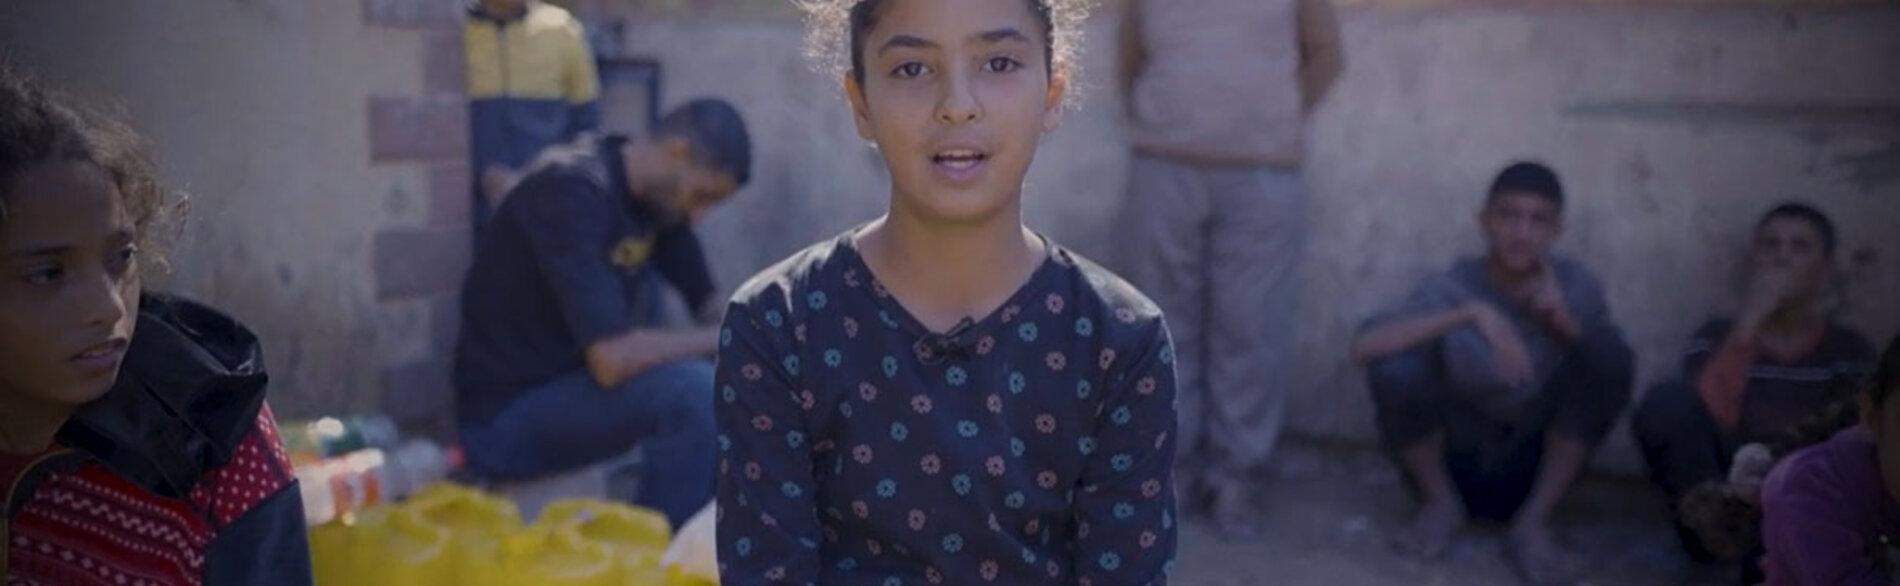 «قبل الحرب، كان حلمي أن أصبح طبيبة لكي أعالج الناس.» في يوم الطفل العالمي، أعادت منسقة الشؤون الإنسانية، لين هاستينغز، تأكيد مناشدتها «لحماية الأطفال الفلسطينيين والإسرائيليين وحماية حقوقهم.» لقطة من فيديو صورته اليونيسف